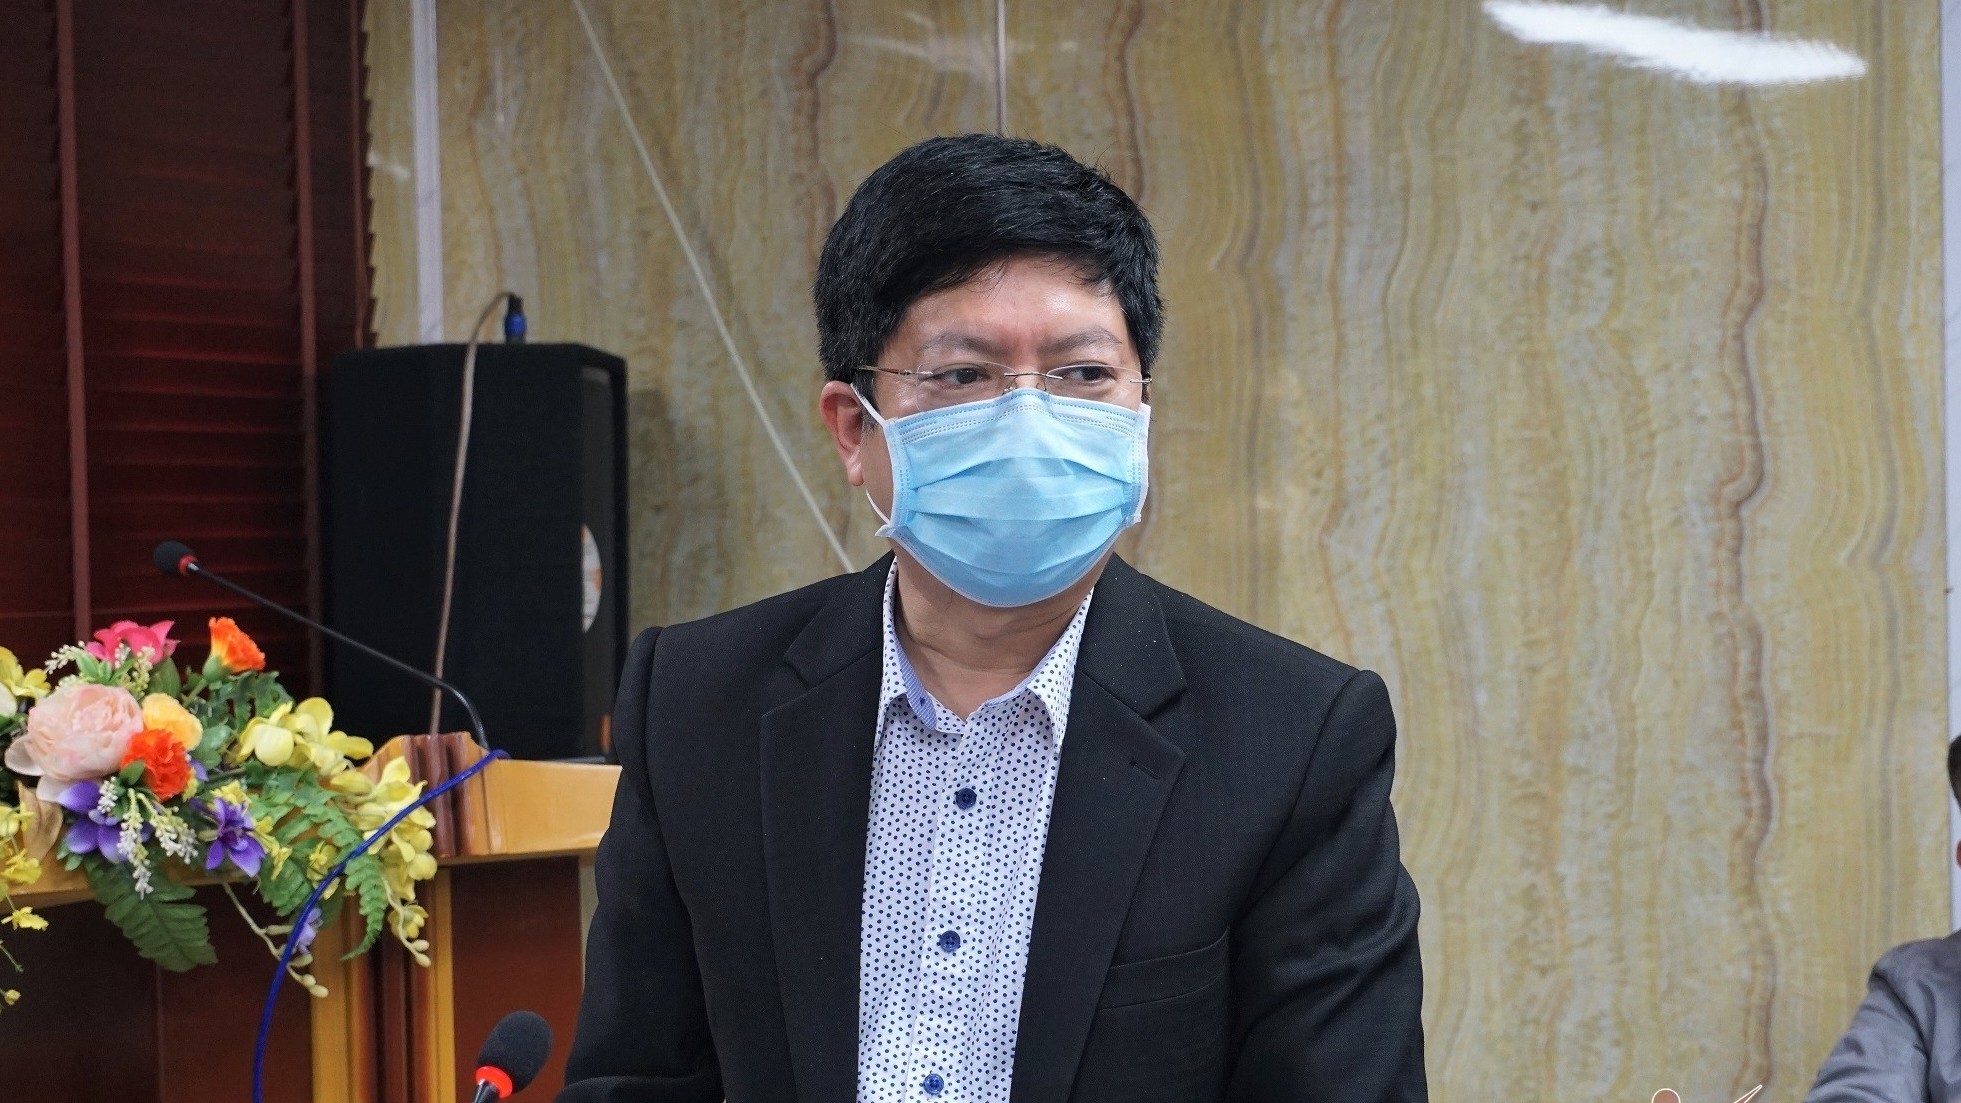 20 bệnh nhân Covid-19 tại Chí Linh bị tổn thương phổi